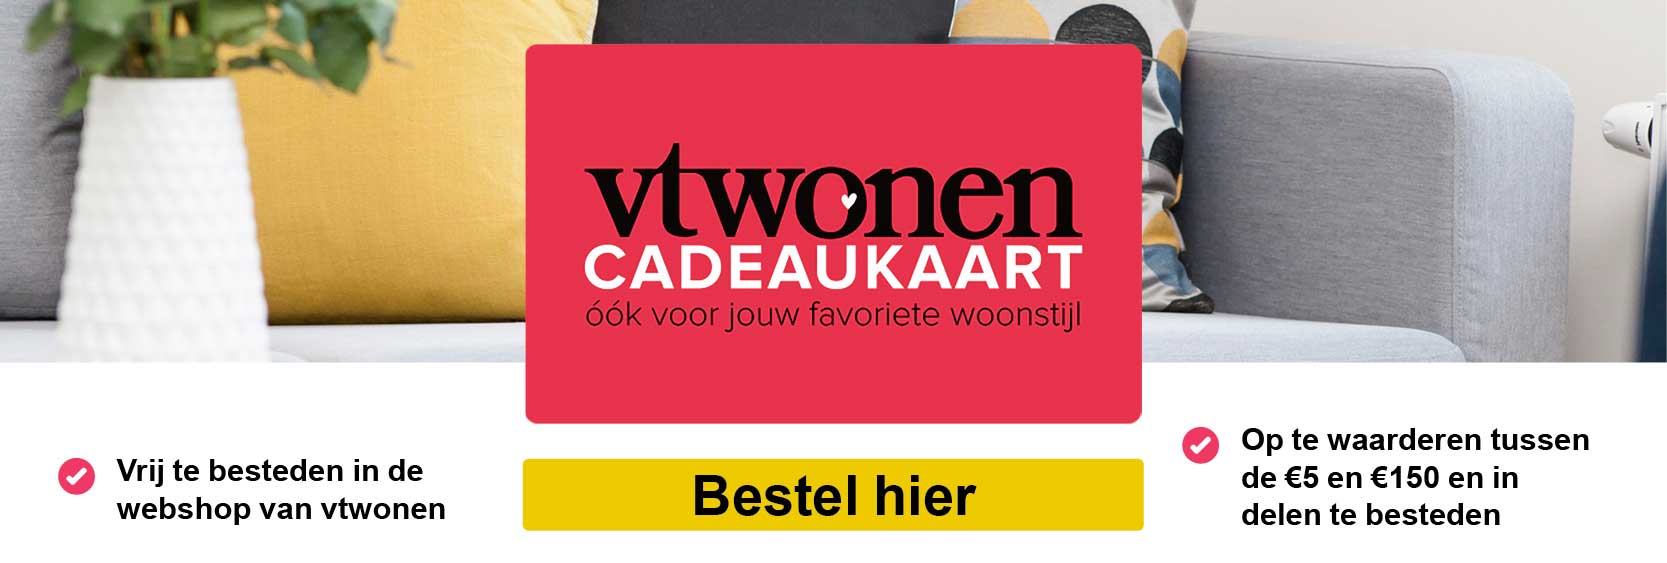 VT_wonen_banner_def